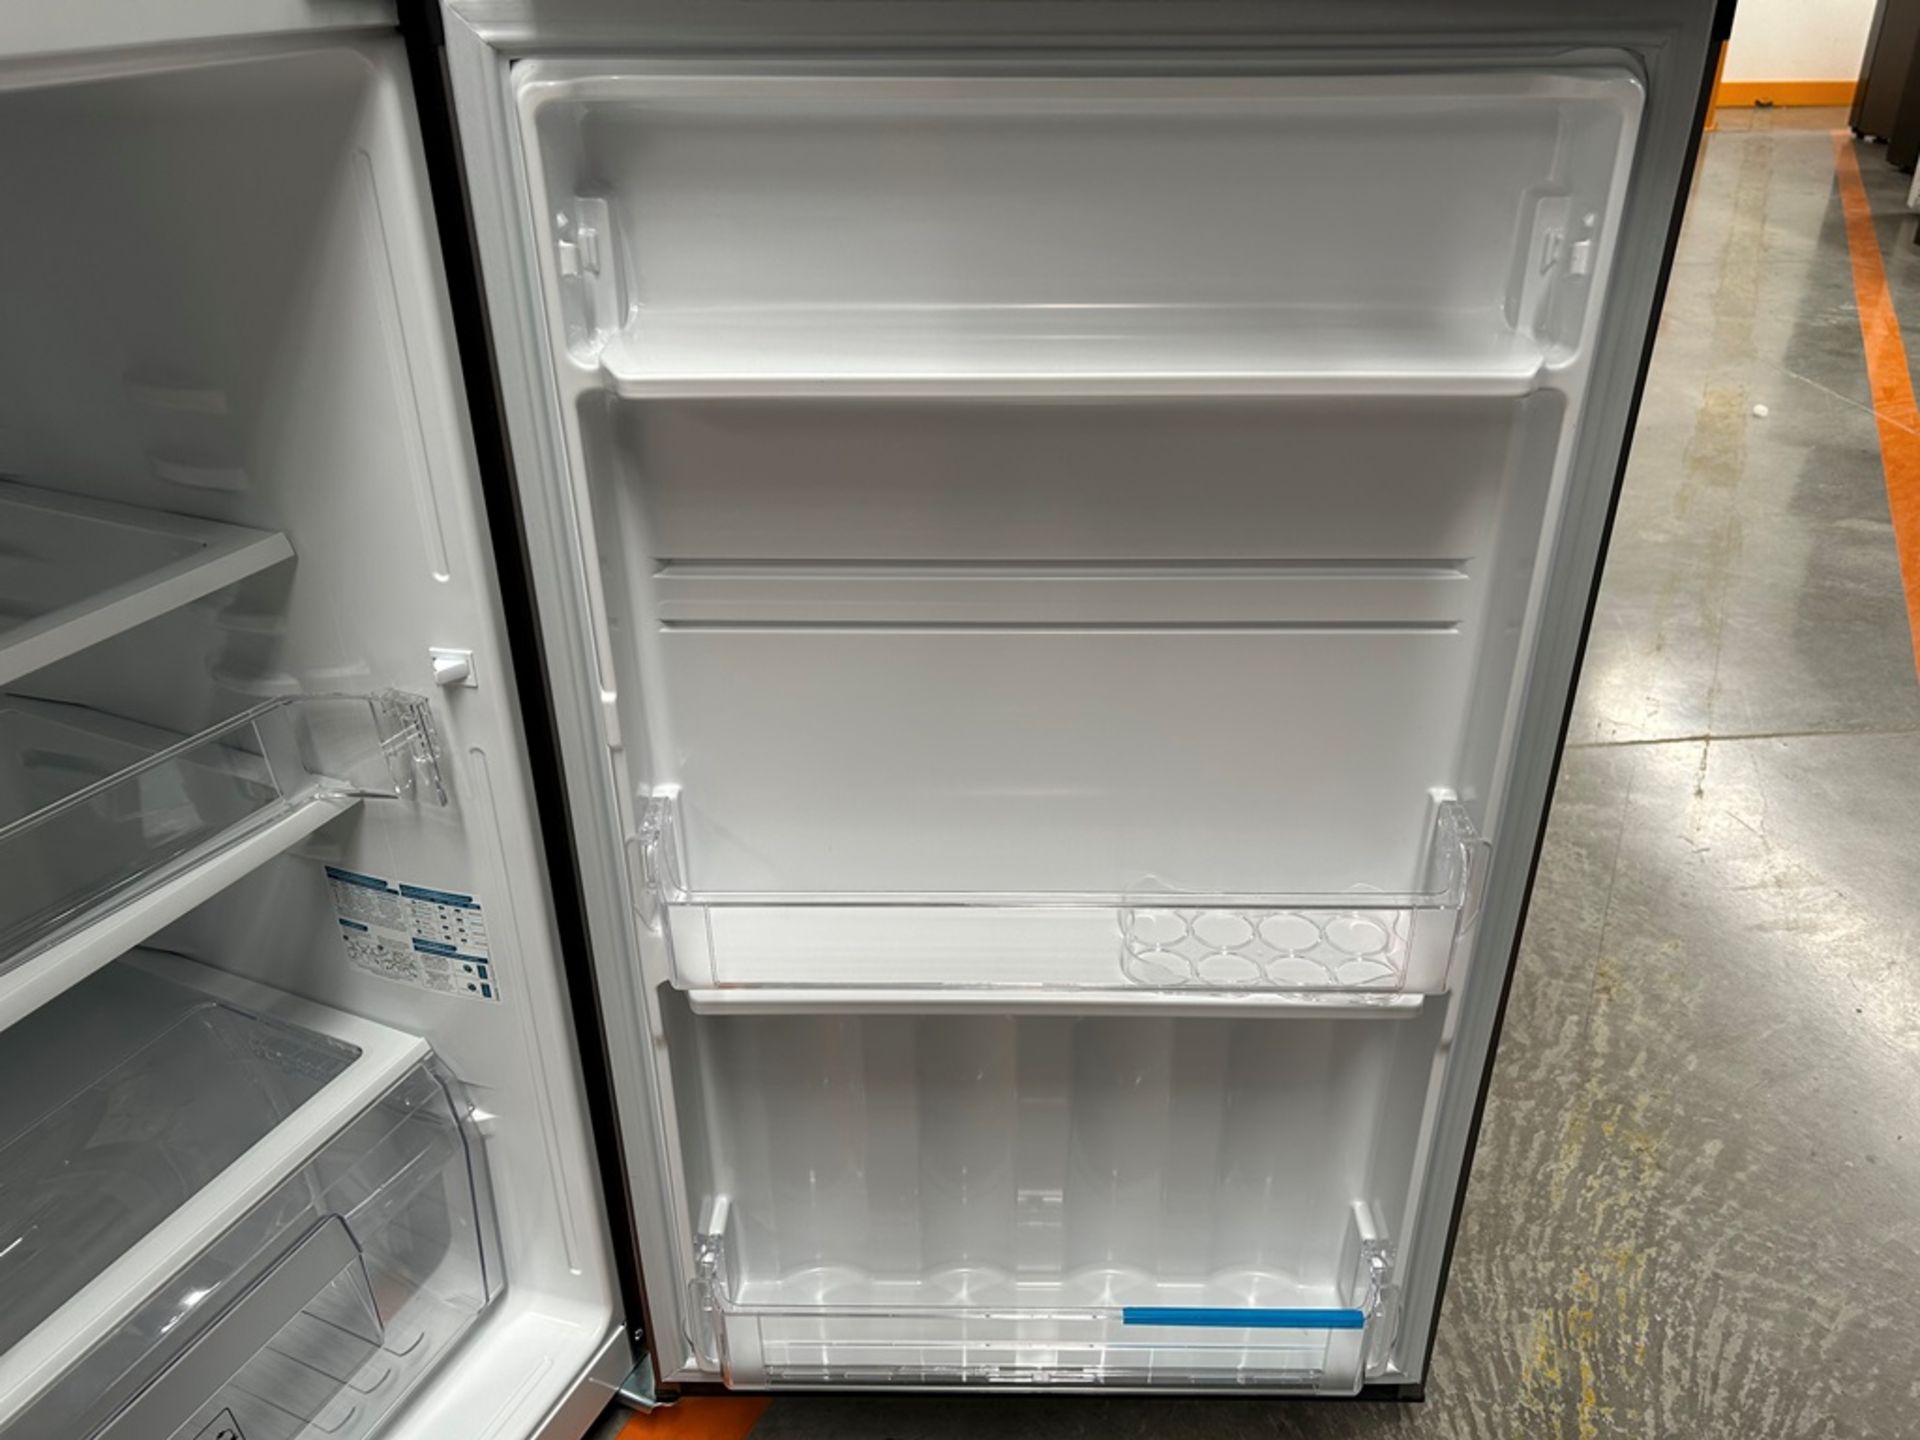 Lote de 2 refrigeradores contiene: 1 refrigerador Marca MABE, Modelo RME360PVMRM, Serie 01988, Colo - Image 14 of 18